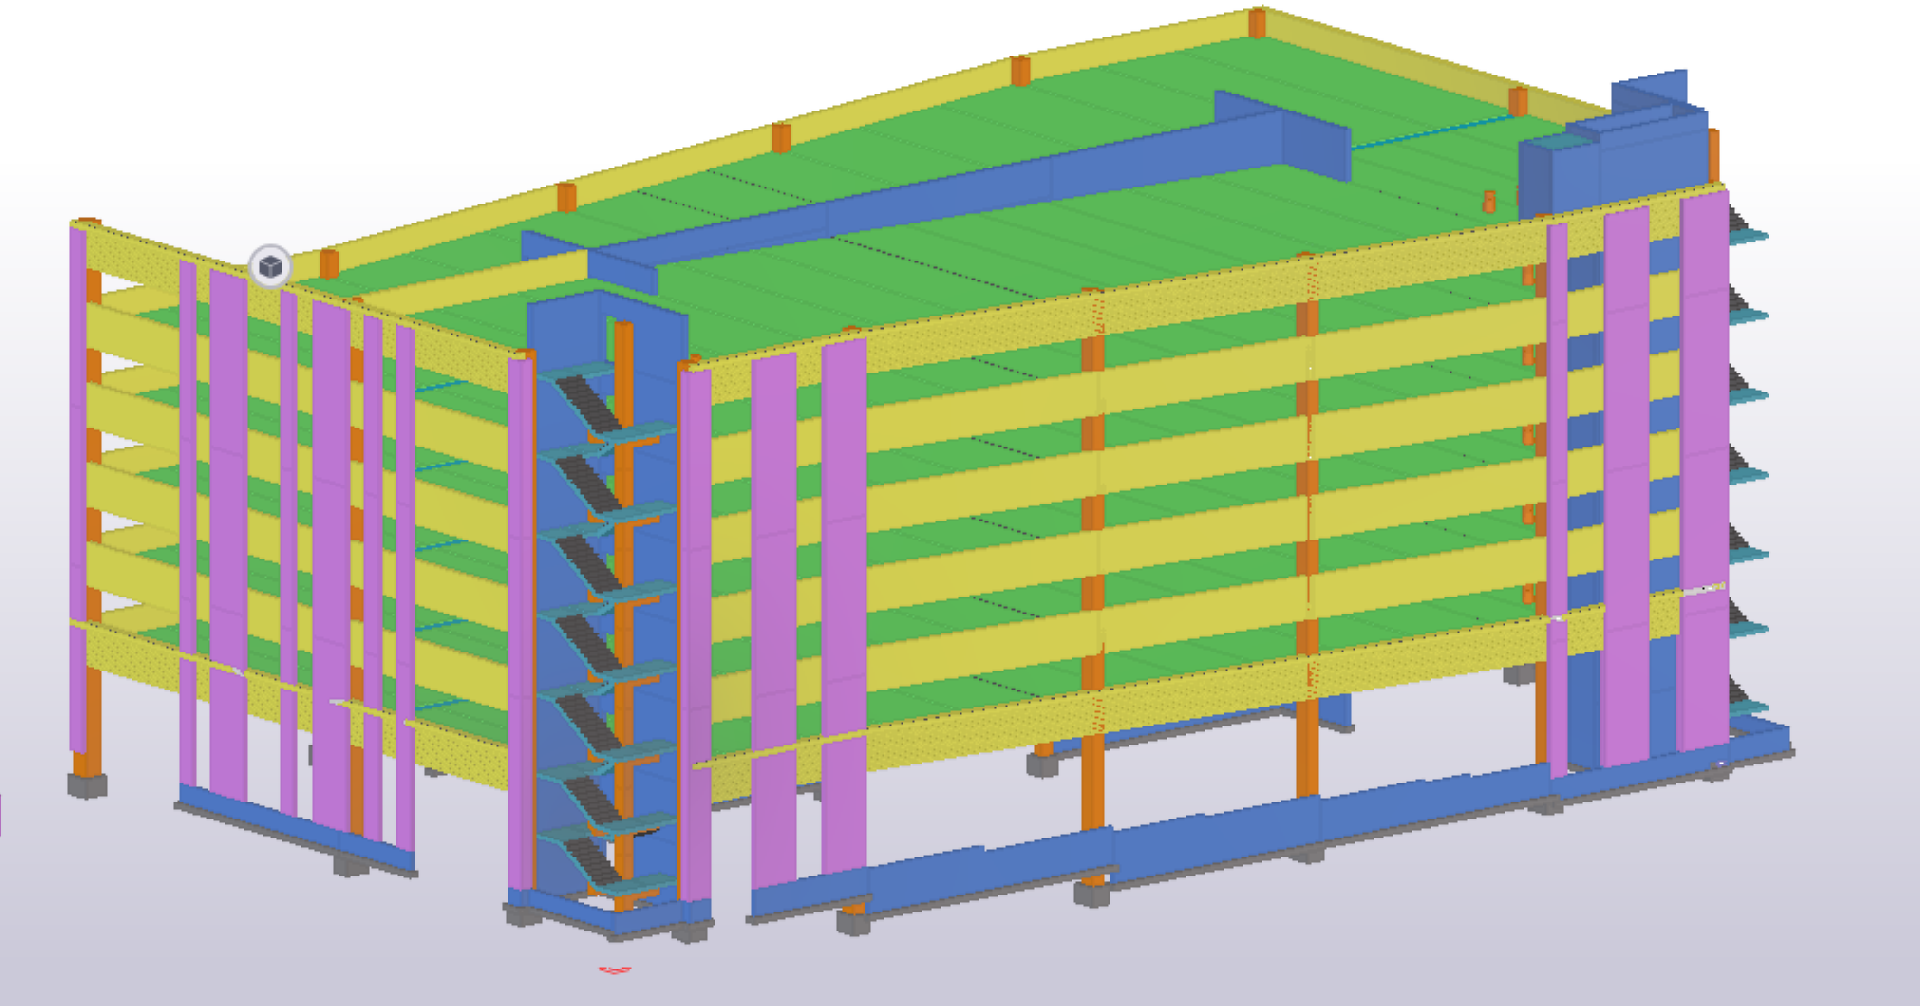 Structural Estimating Model of a Parking Garage